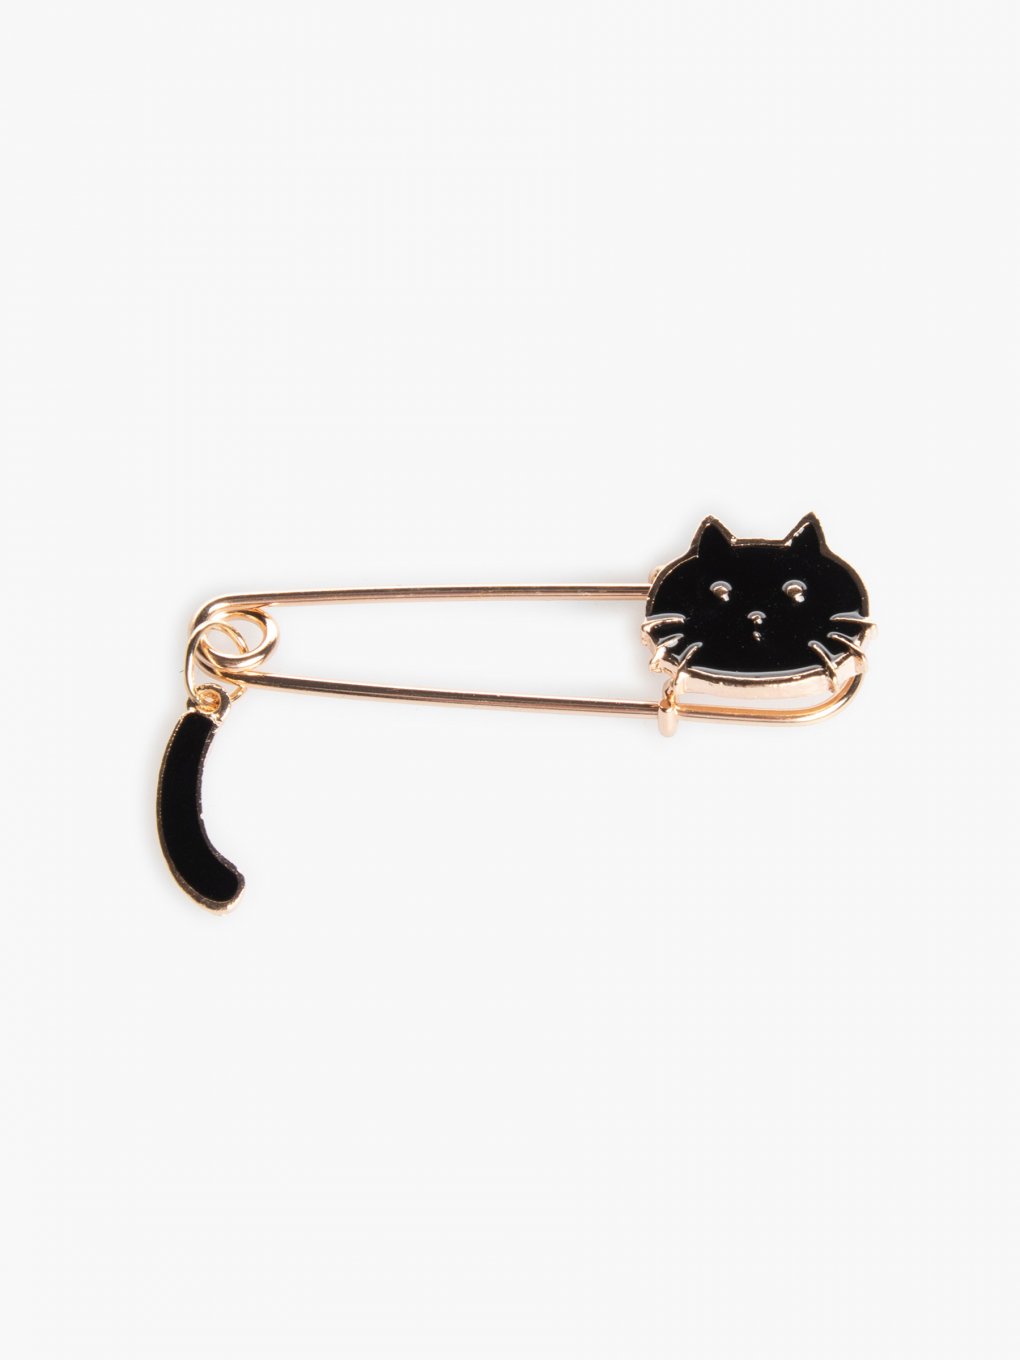 Cat shaped brooch